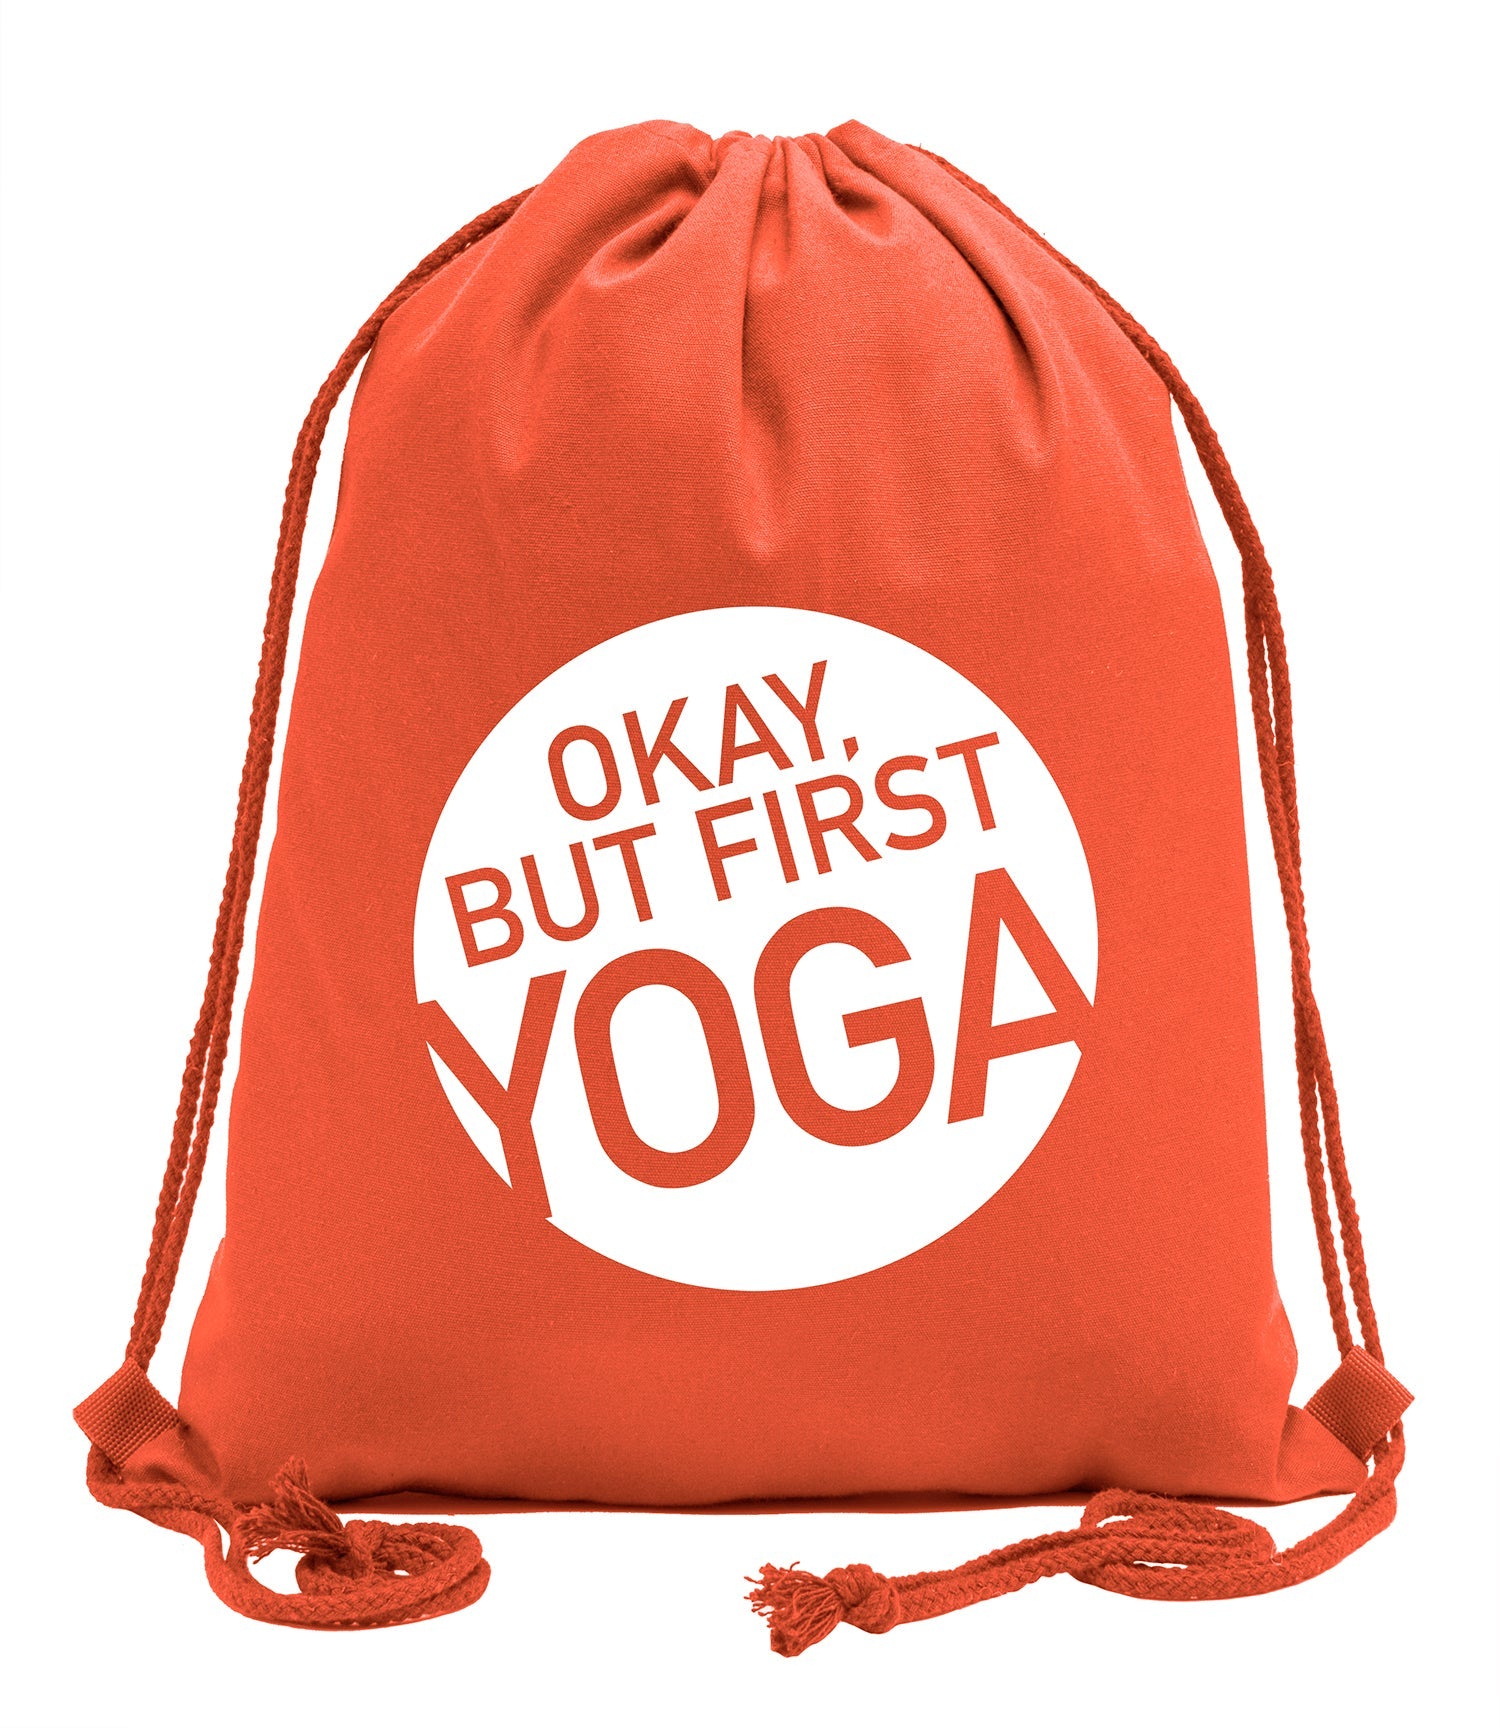 https://matohash.com/cdn/shop/products/okay-but-first-yoga-cotton-drawstring-bag-222981.jpg?v=1680667482